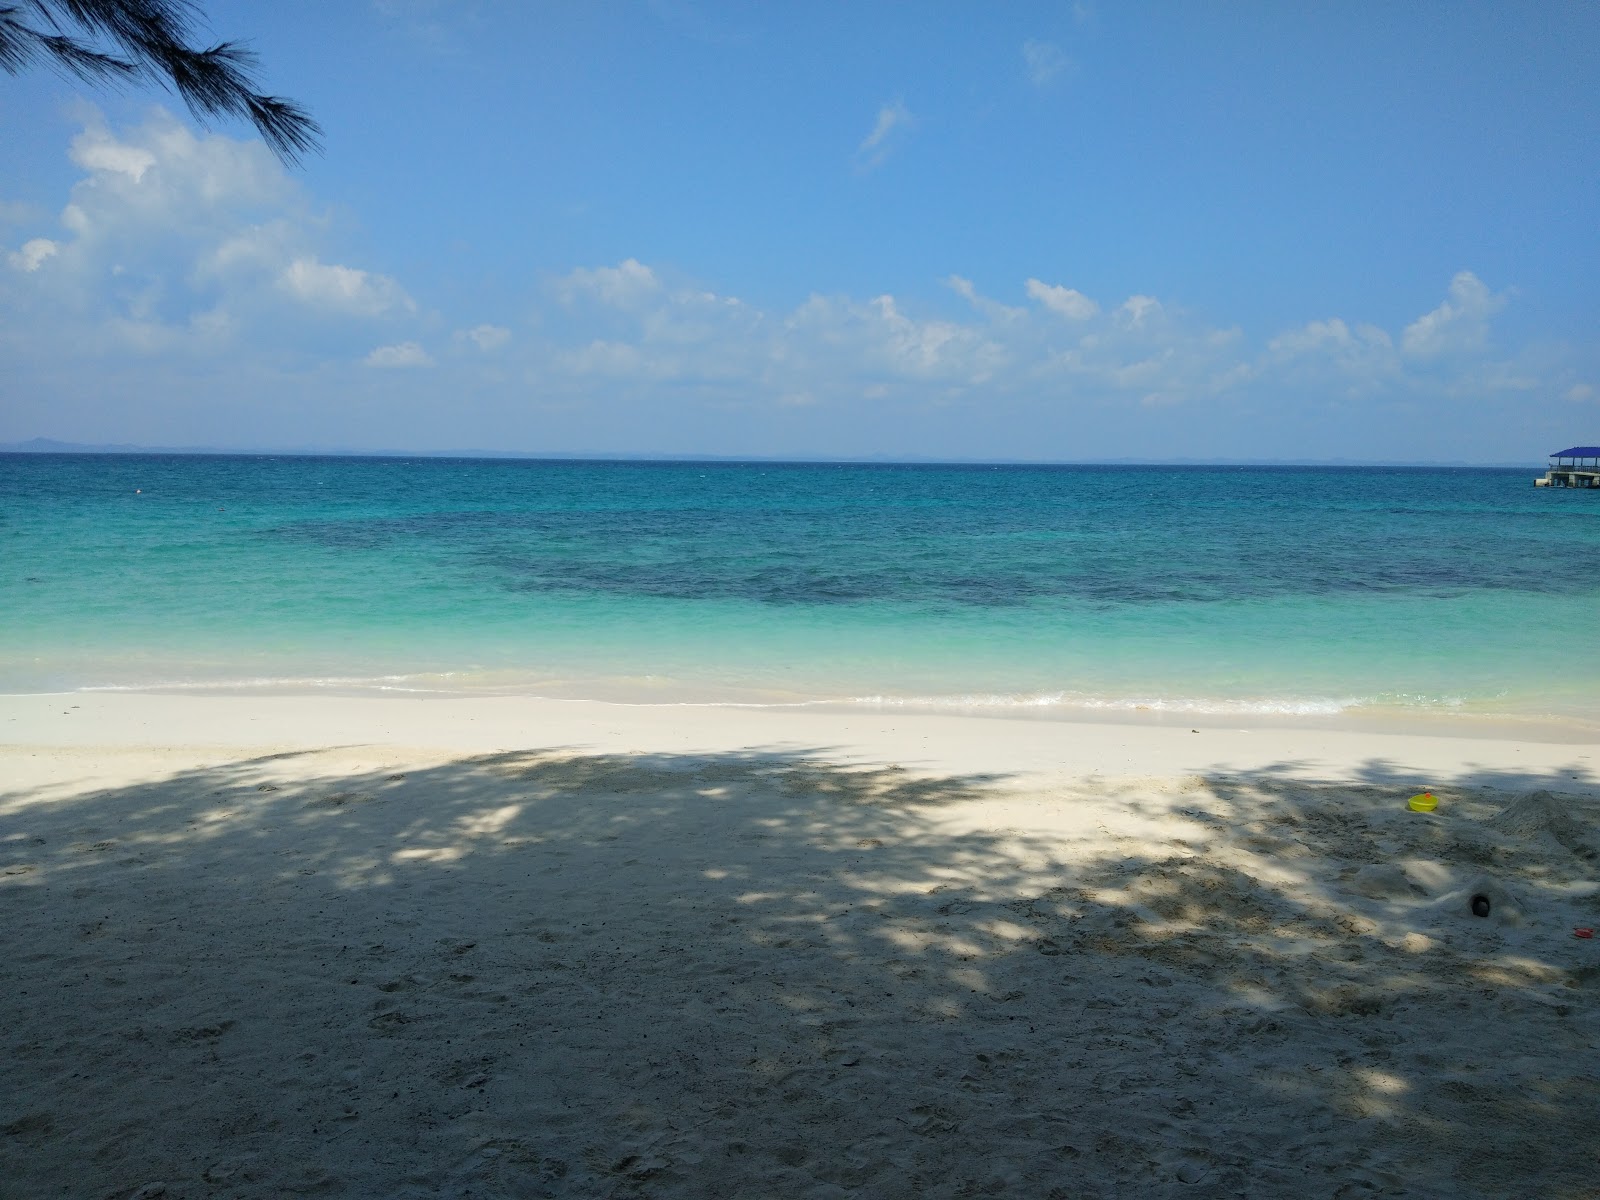 Fotografie cu Aseania Beach Resort cu o suprafață de nisip alb